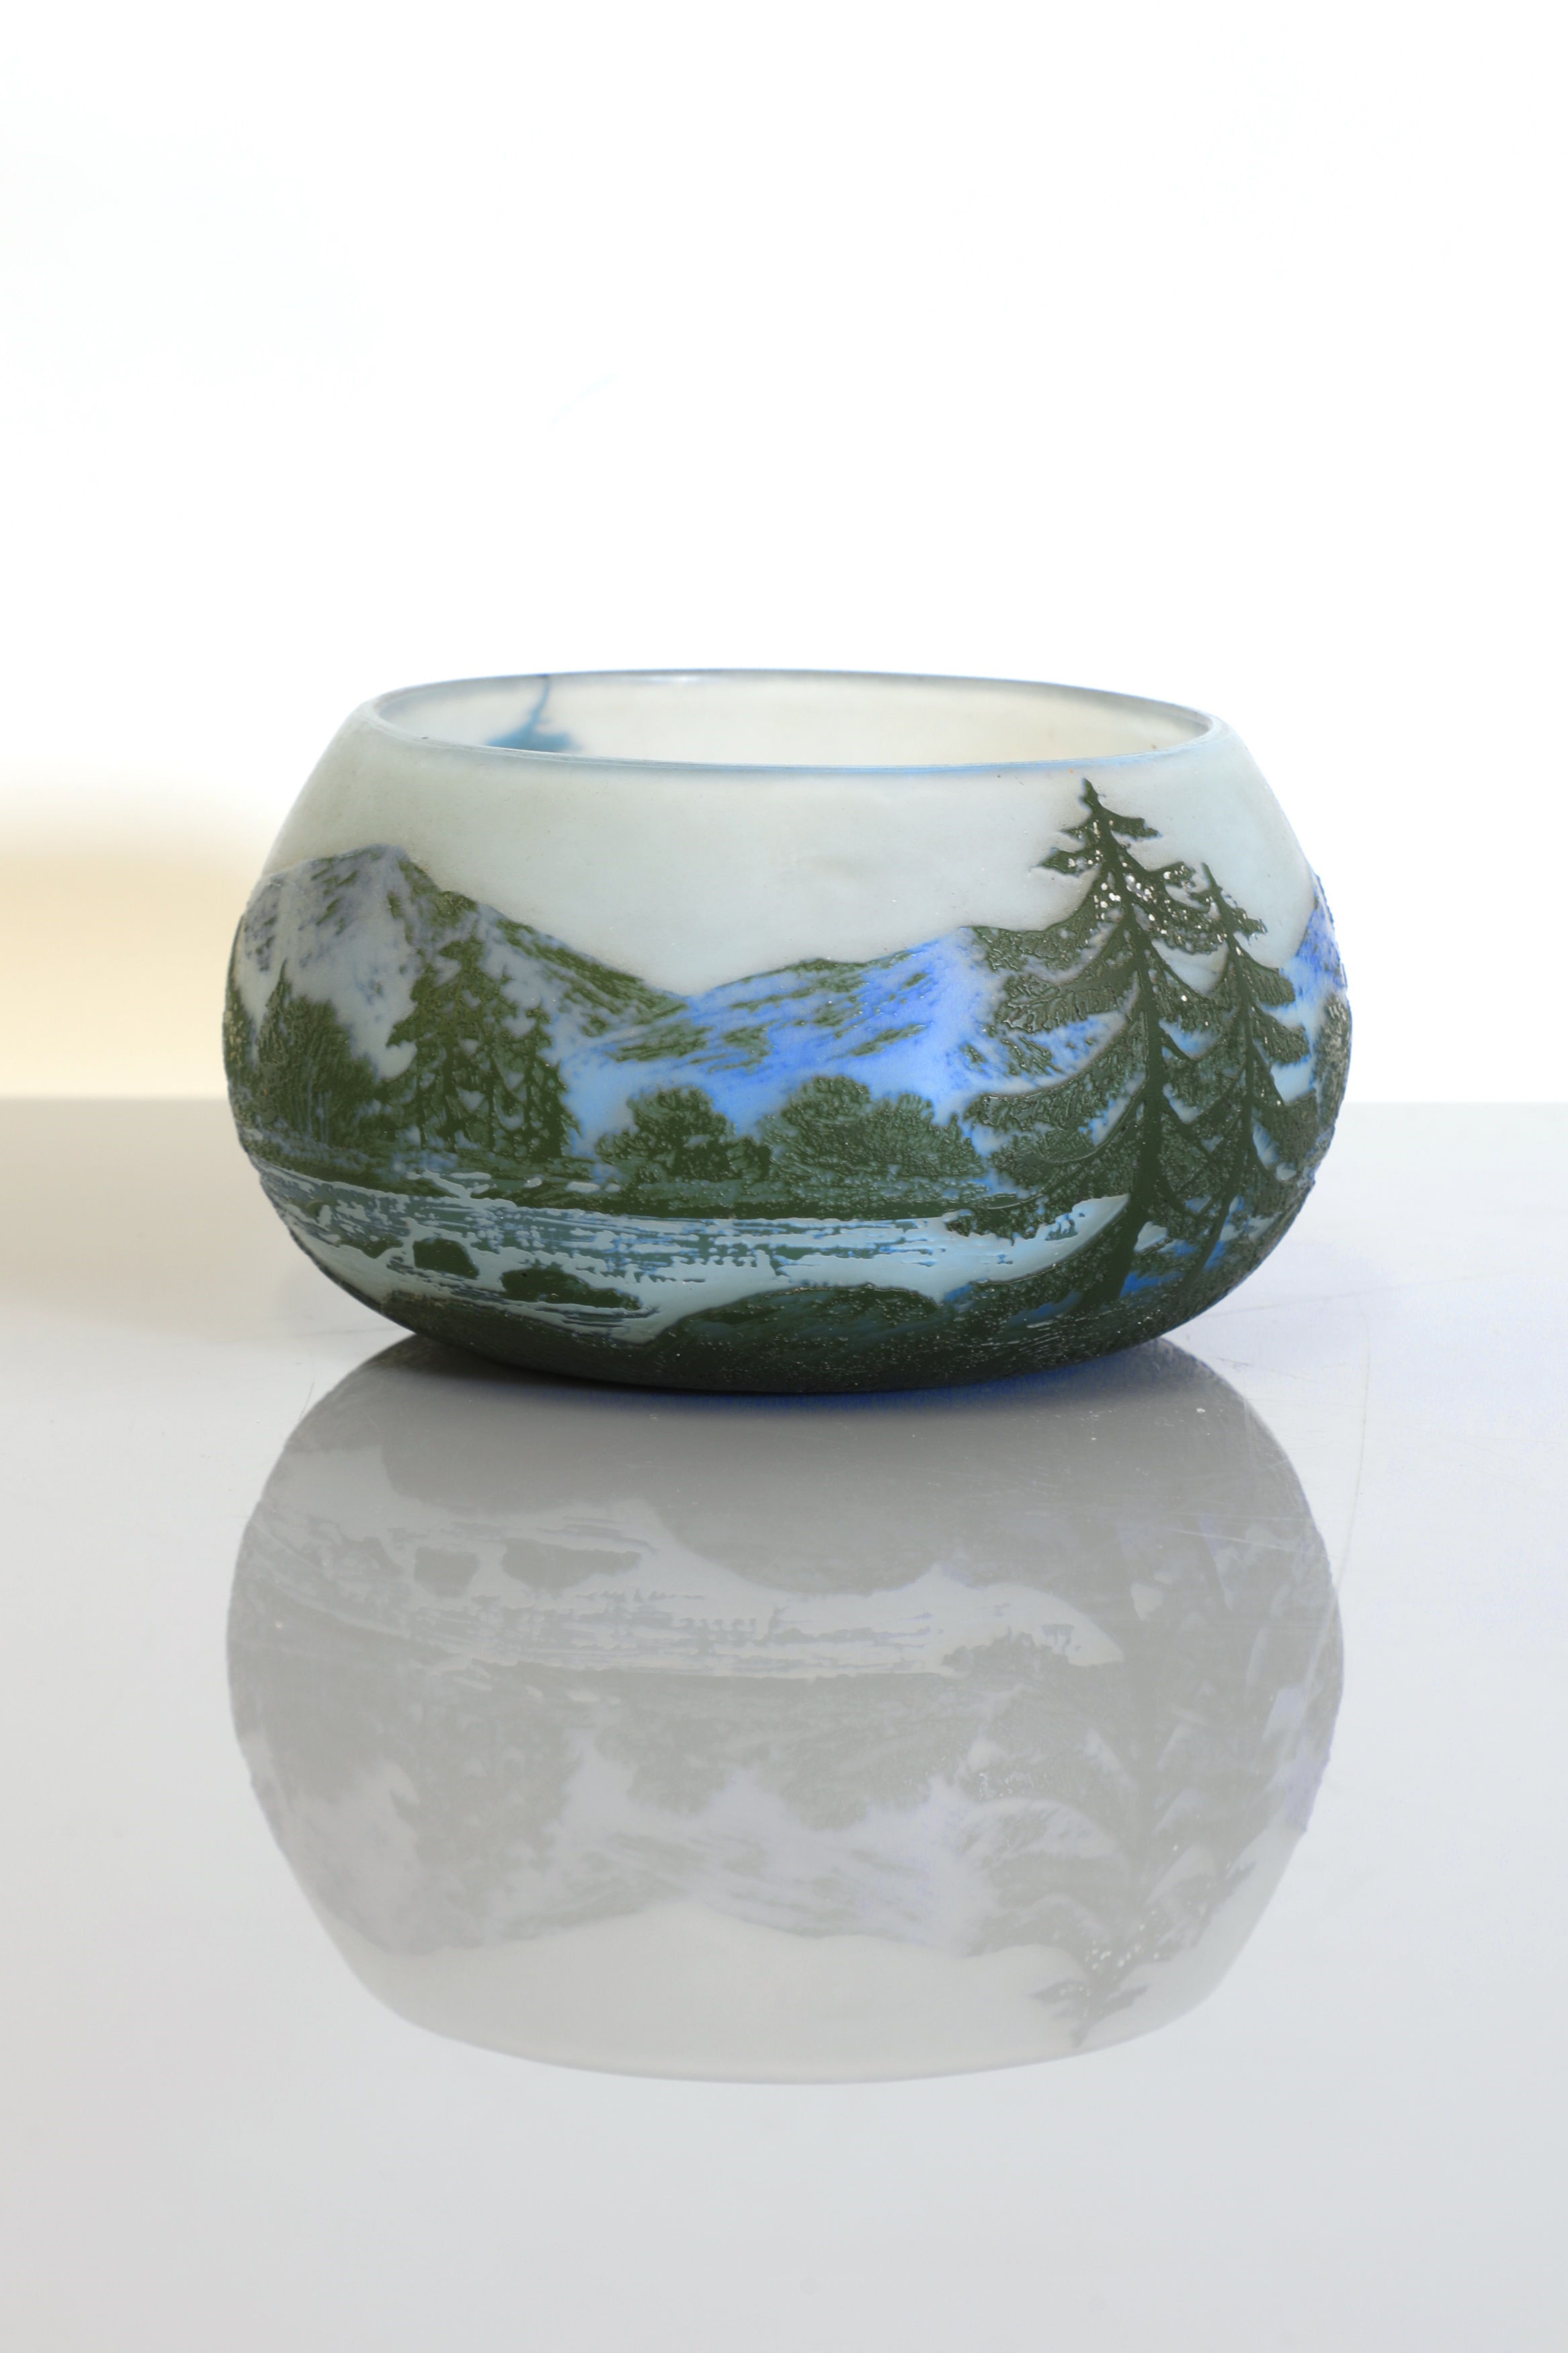 A French Cristallerie de Patin 'DeVez' landscape cameo glass bowl (£300-500)